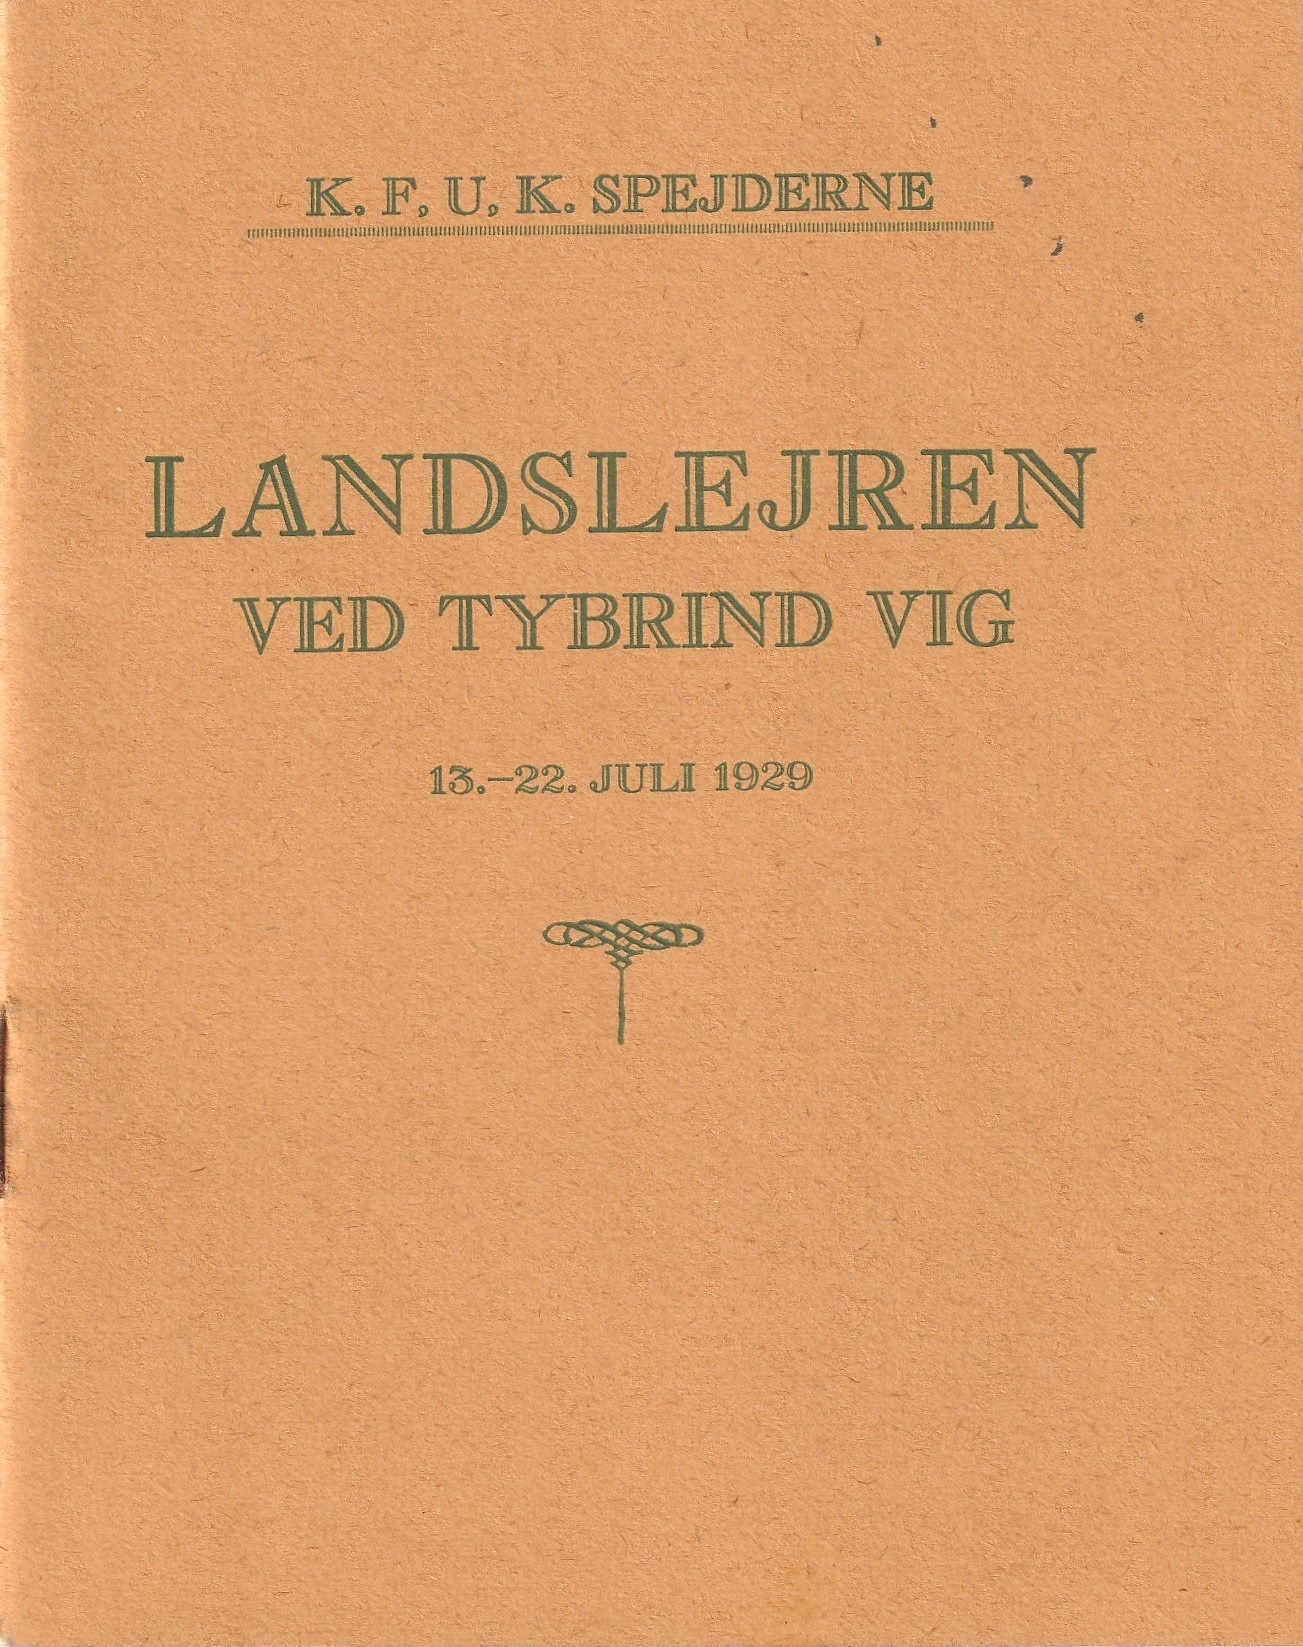 1929 KFUK sp Landslejr